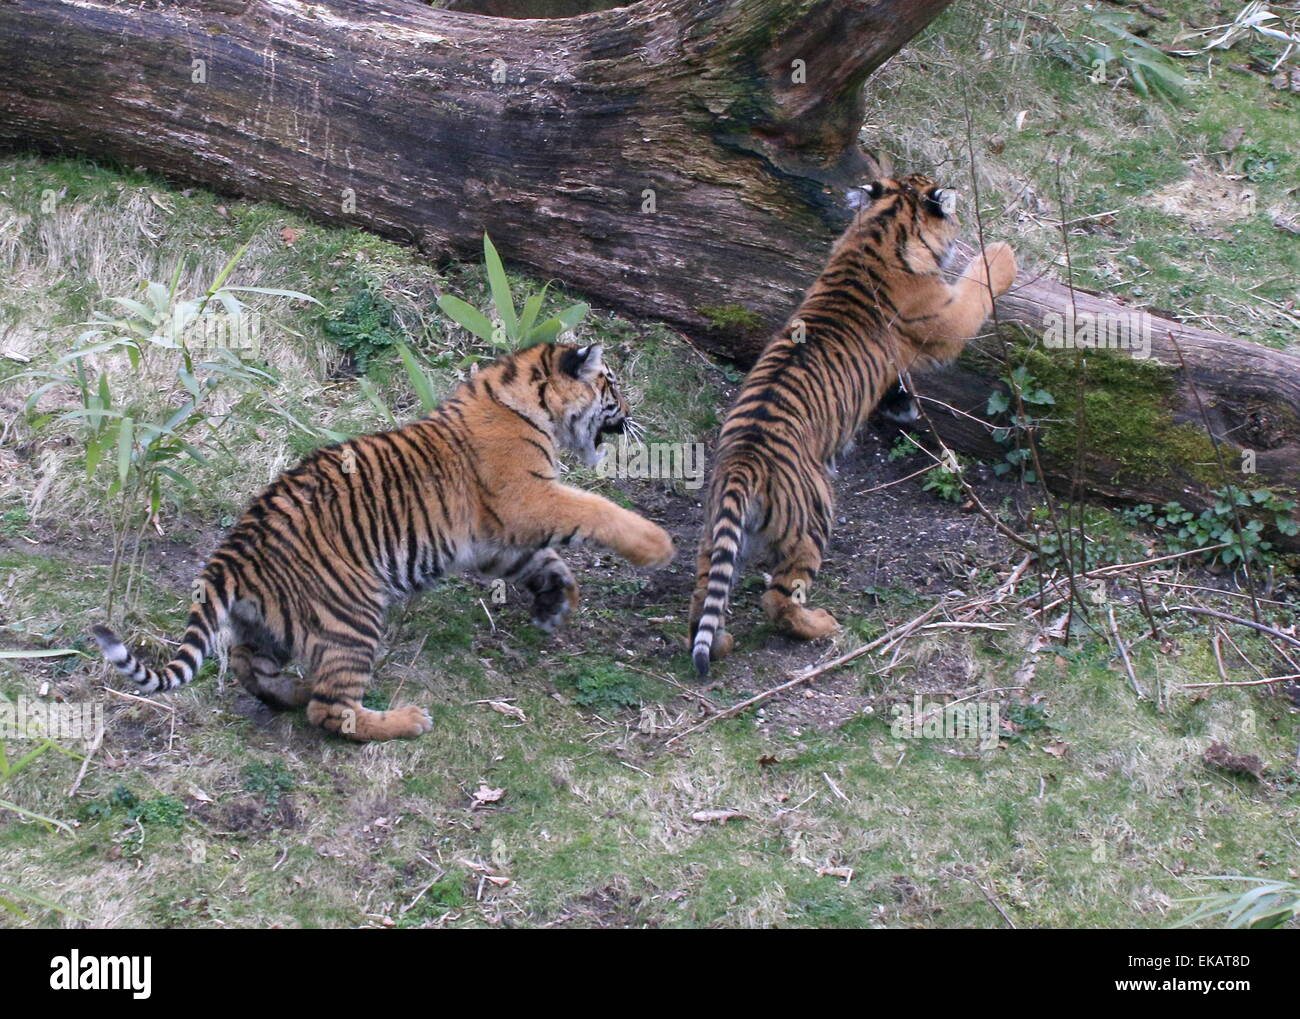 Hembra Cachorros de tigre de Sumatra (Panthera tigris sumatrae) jugando y persiguiendo mutuamente a Bush Burgers' Zoo de Arnhem, Países Bajos Foto de stock